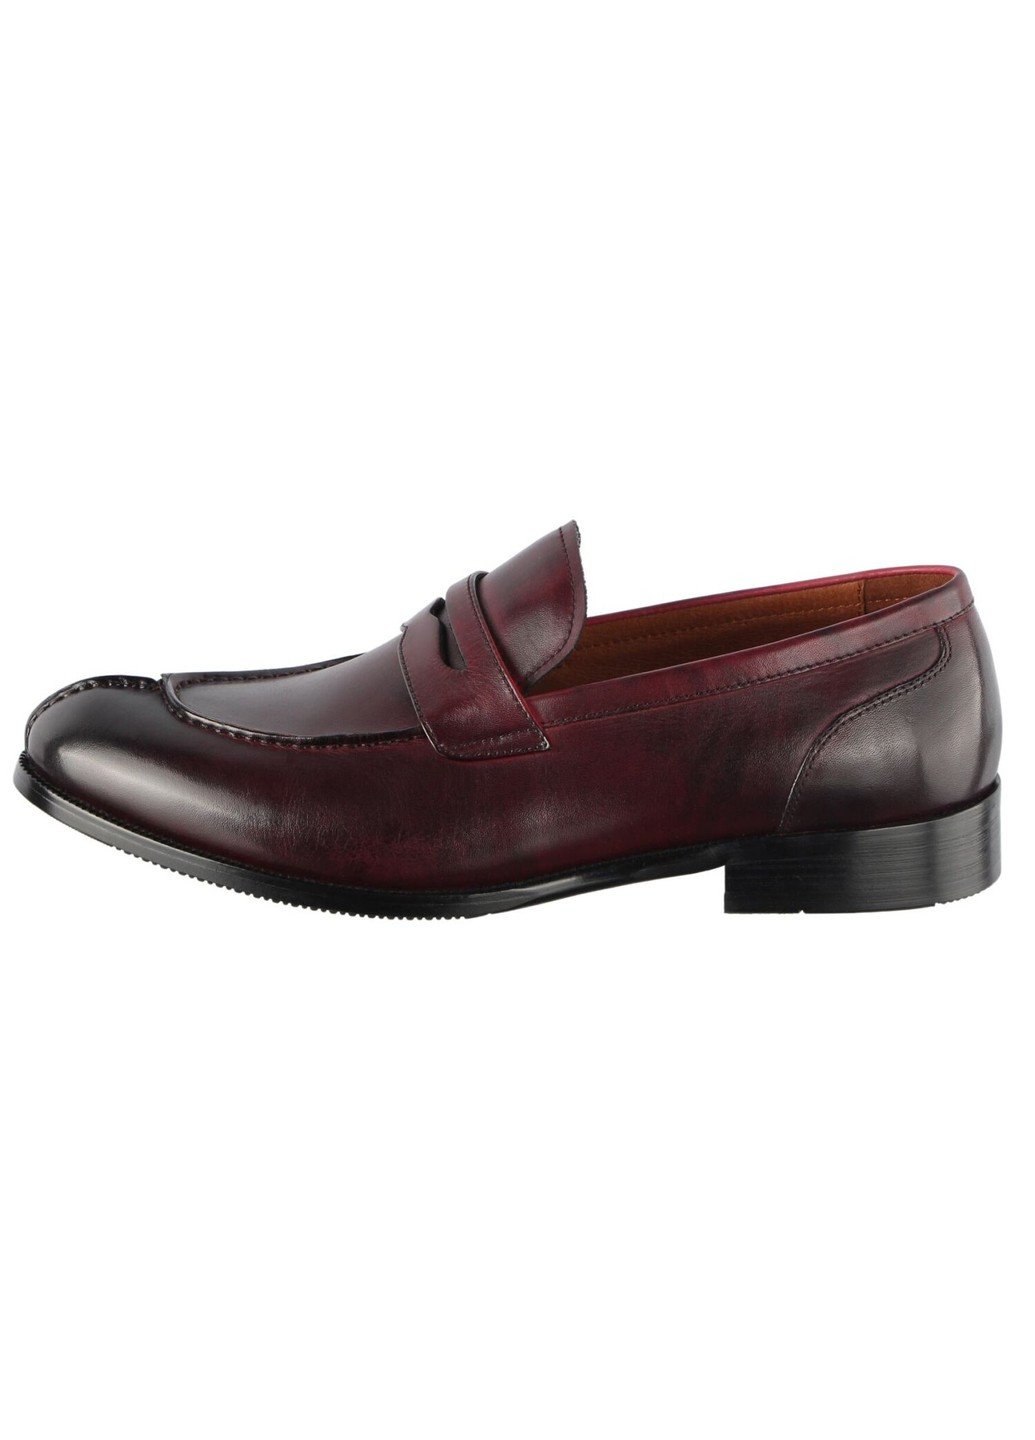 Бордовые мужские классические туфли 110291 Lido Marinozzi без шнурков